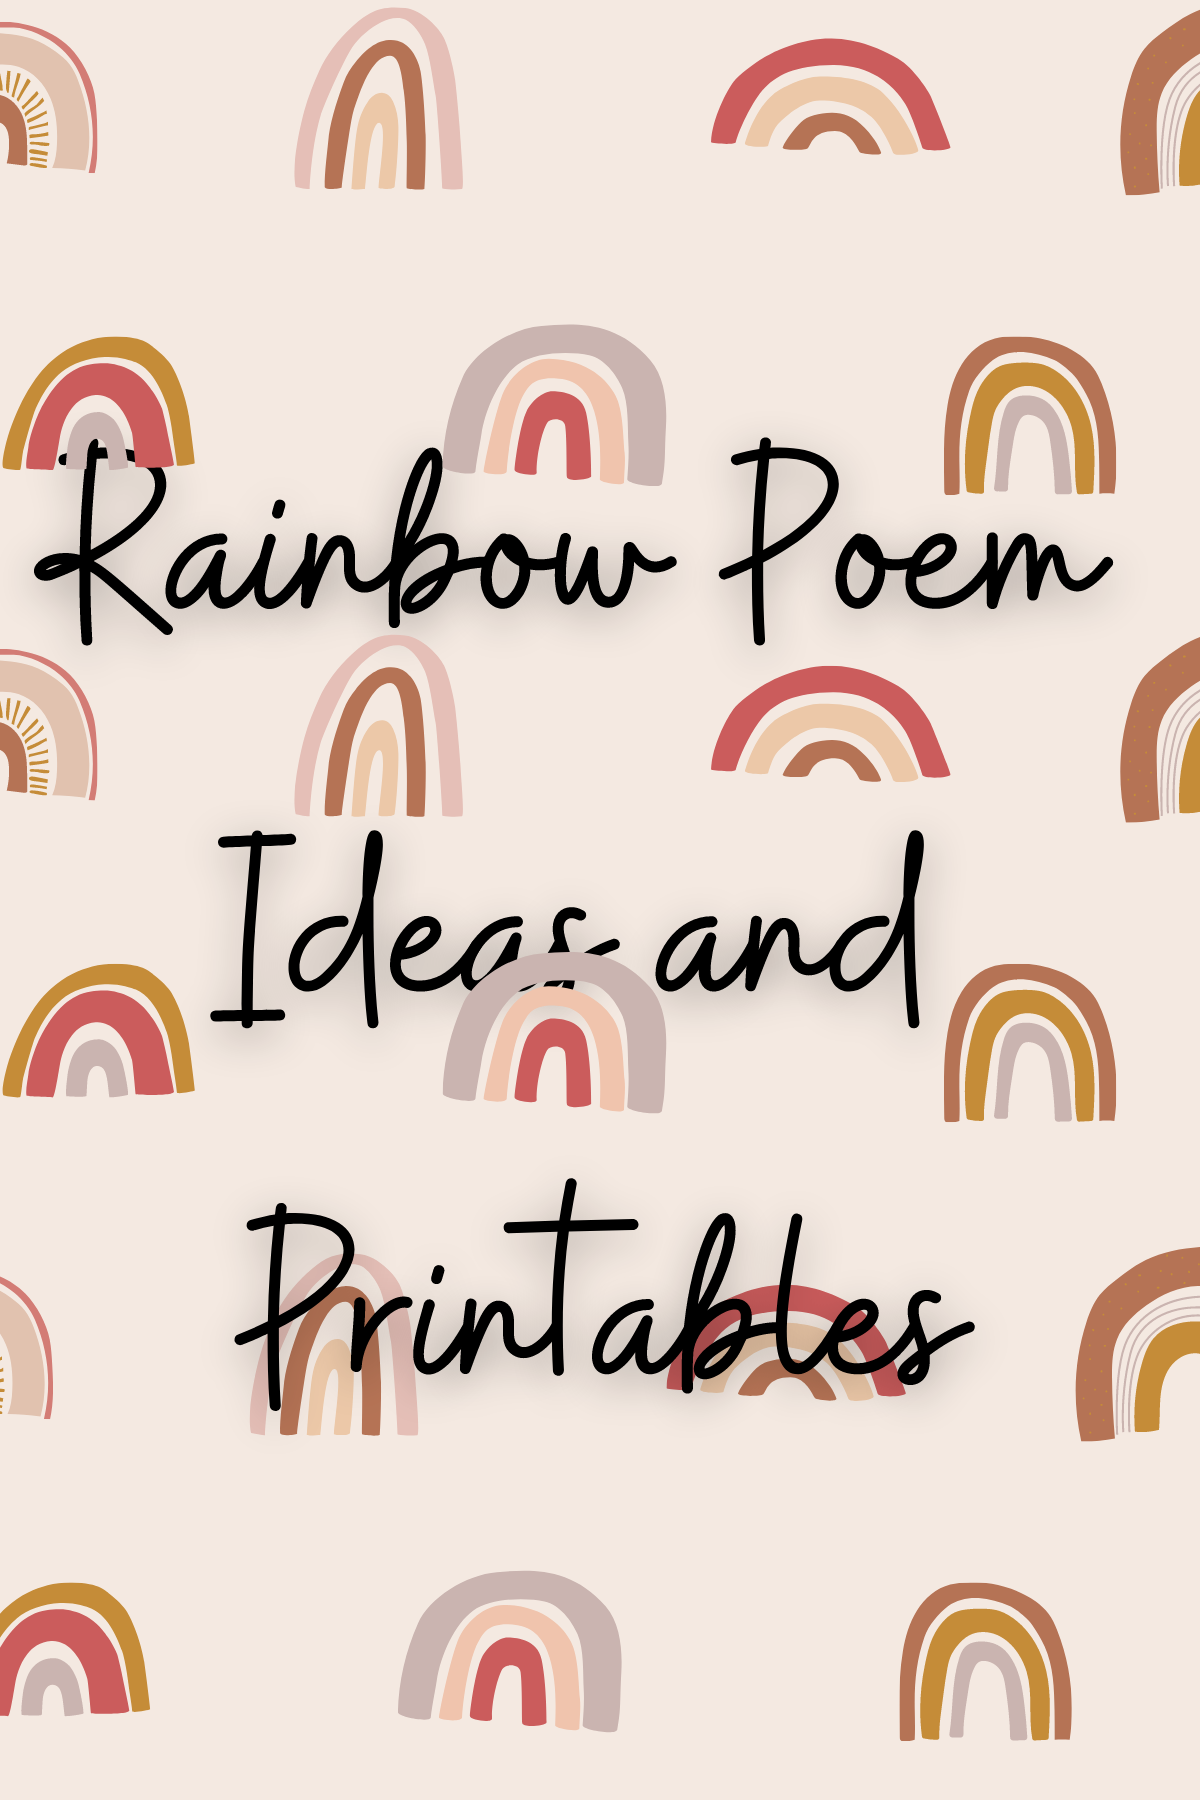 rainbow poem ideas to print